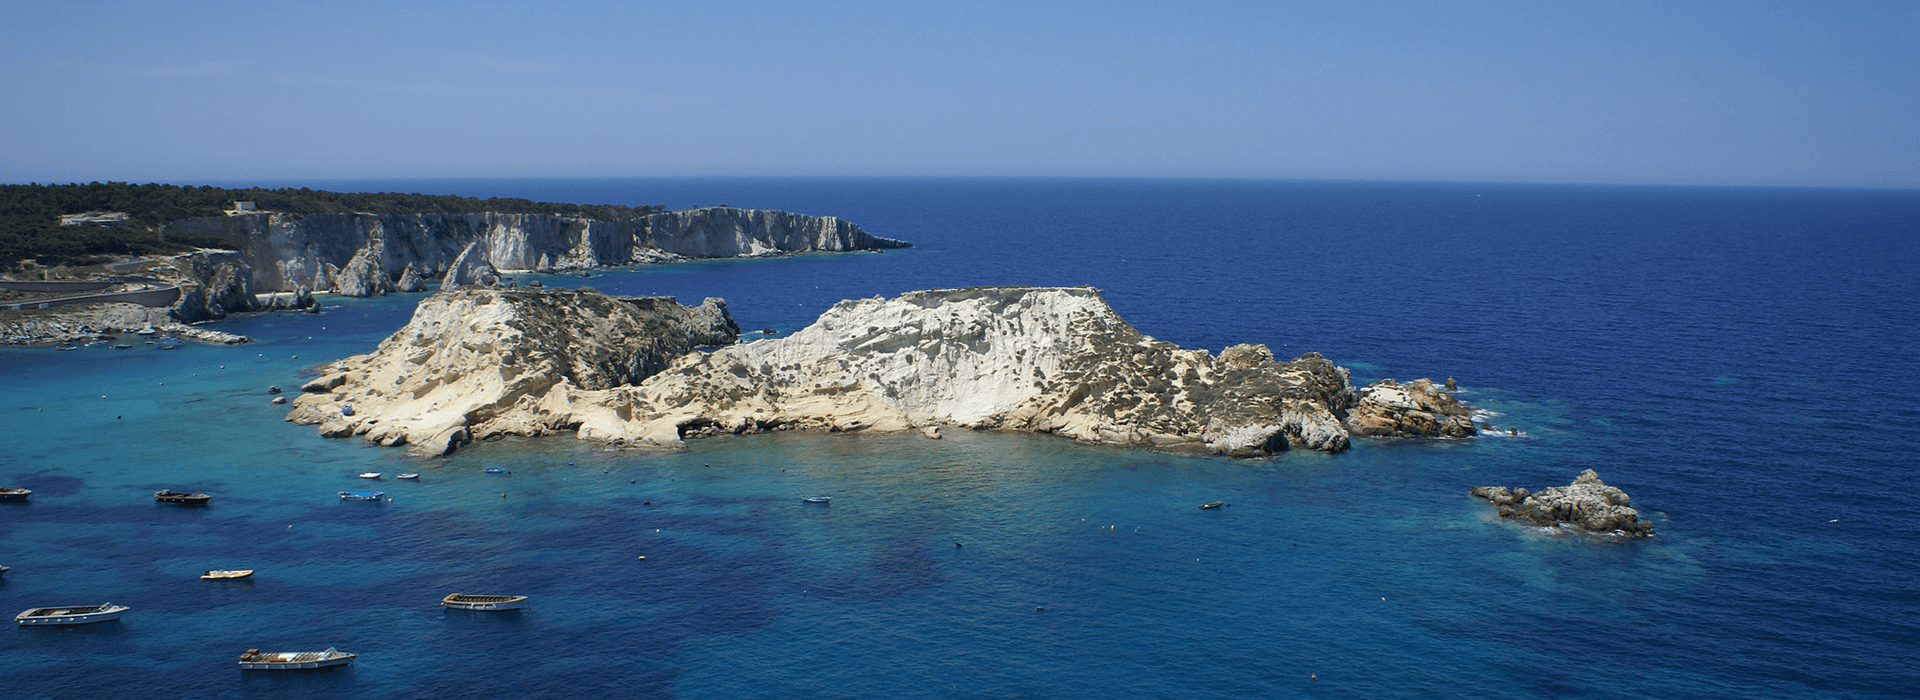 Il Cretaccio Isole Tremiti